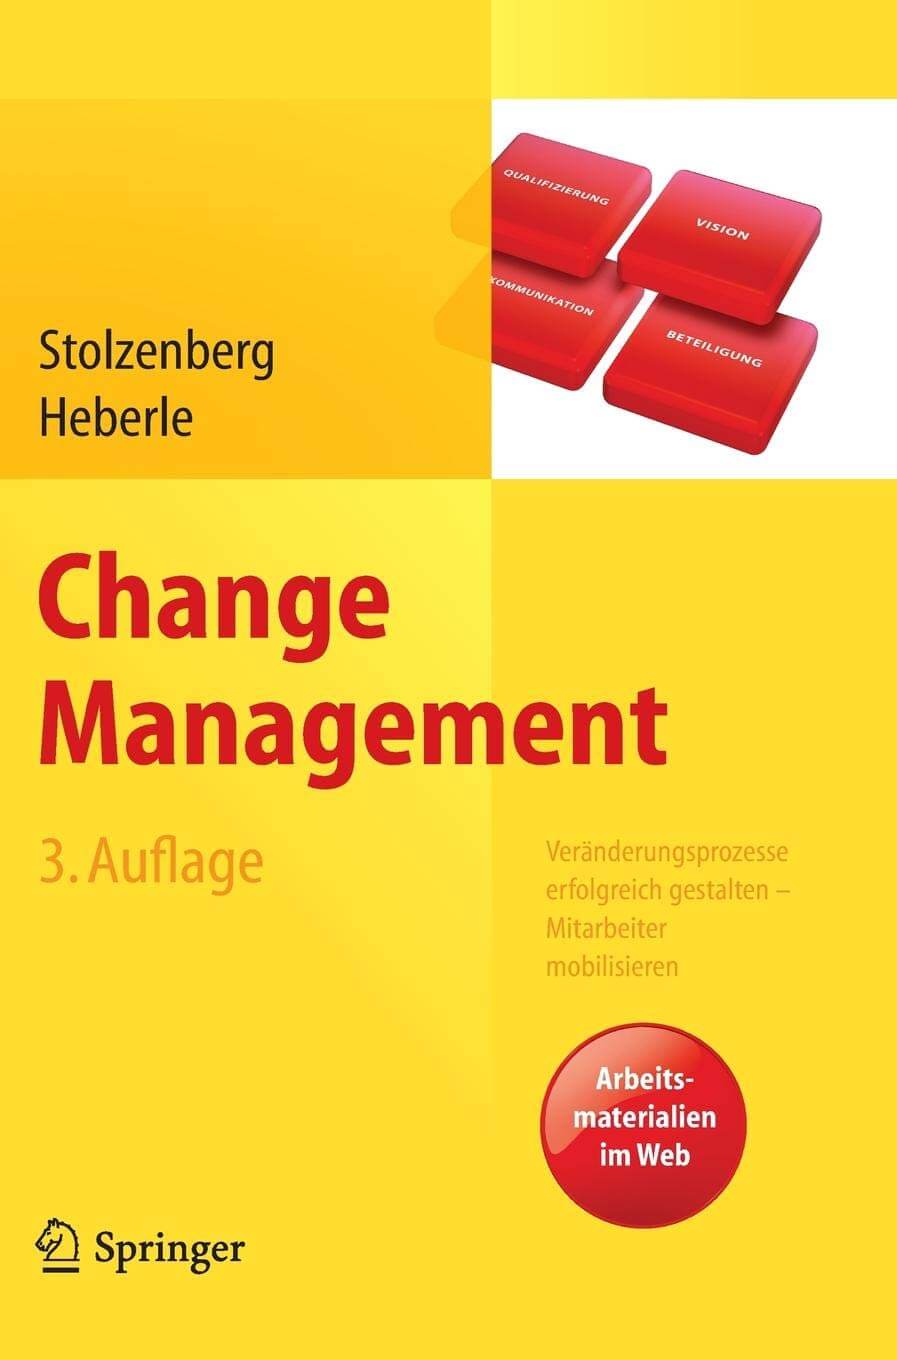 Veränderungsprozesse erfolgreich gestalten: Buch "Change Management" (Amazon*)